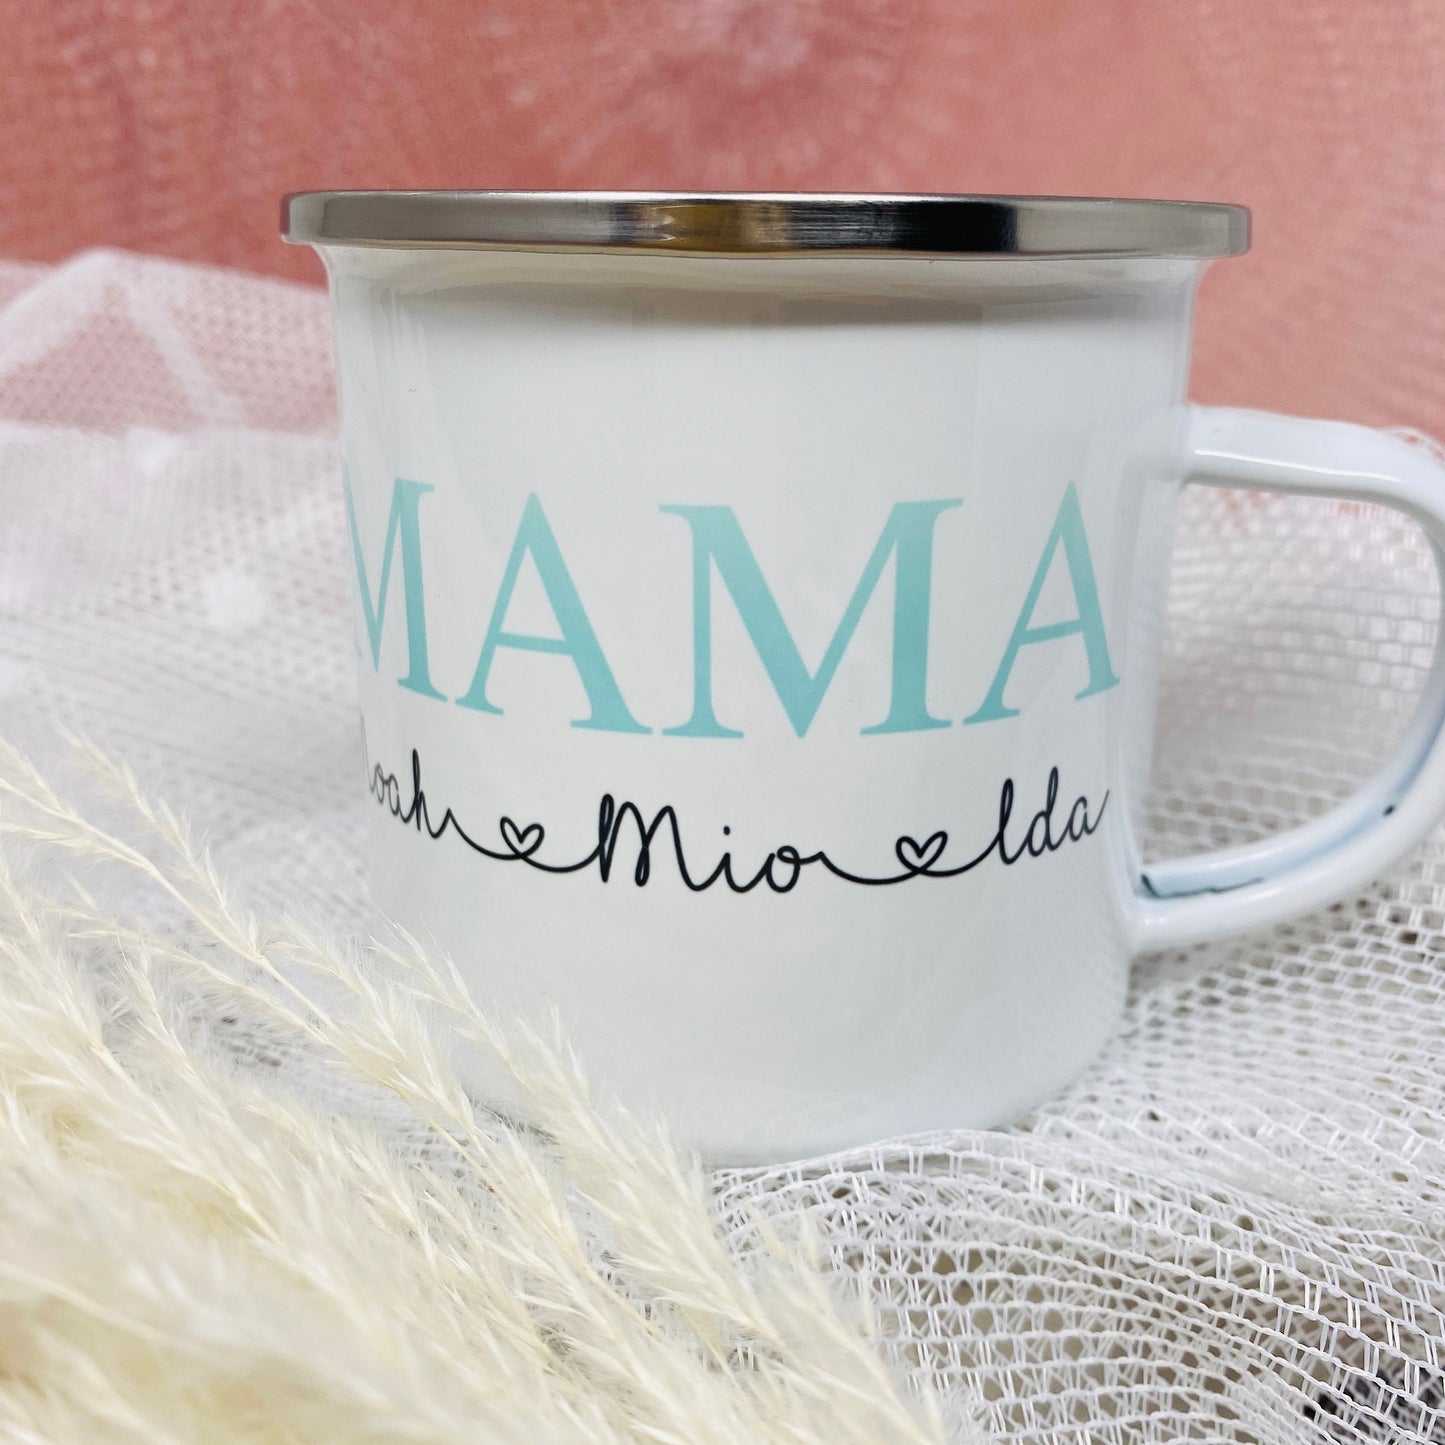 Mama Tasse Emaille personalisiert mit Namen - Farbe wählbar - Kaffeetasse Becher - Geschenk Mama